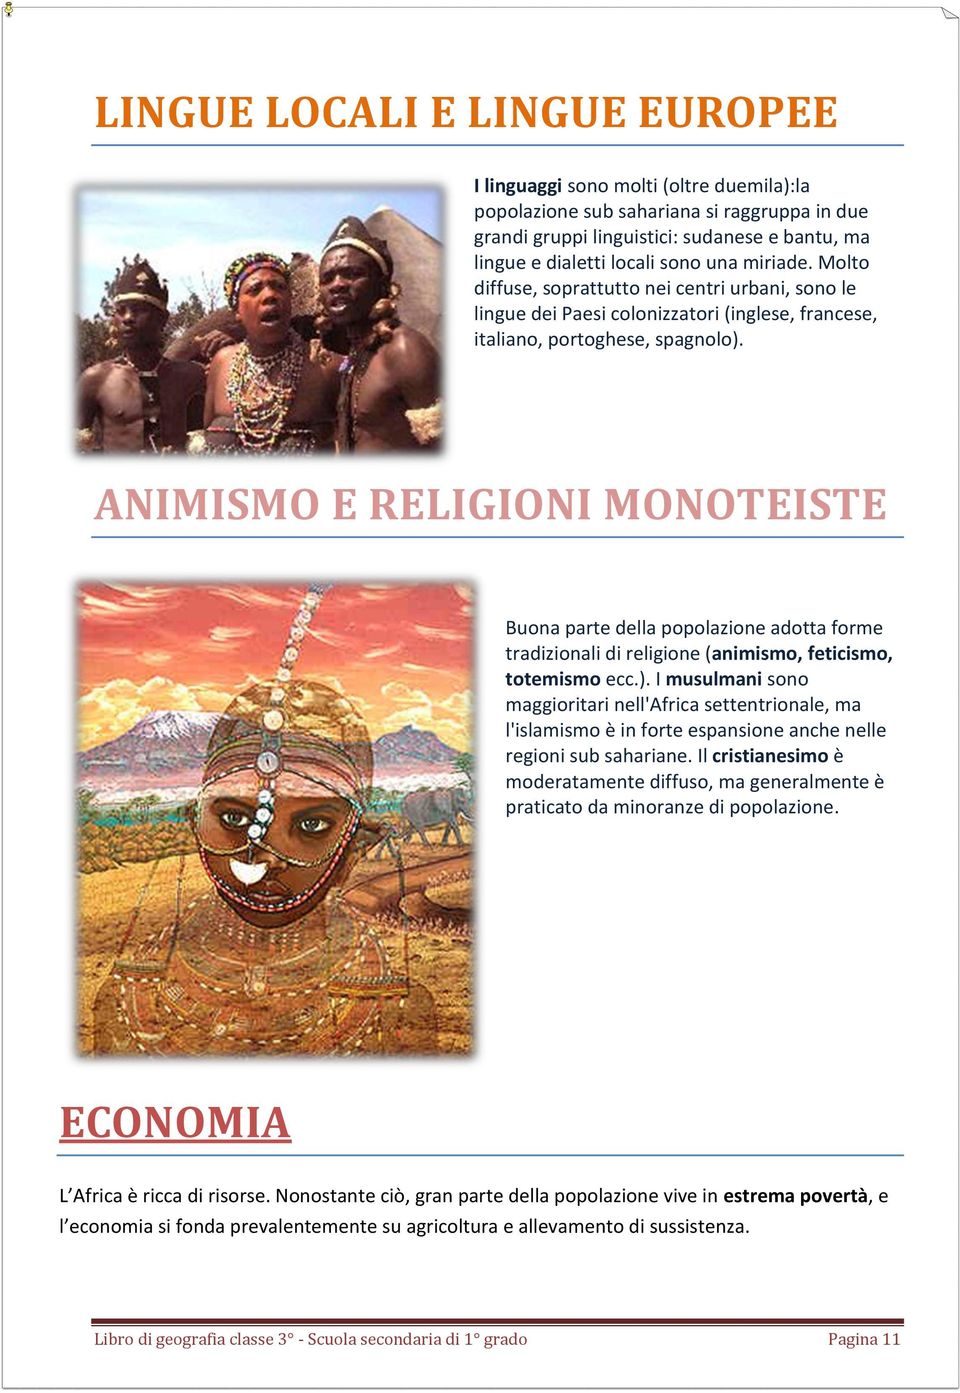 ANIMISMO E RELIGIONI MONOTEISTE Buona parte della popolazione adotta forme tradizionali di religione (animismo, feticismo, totemismo ecc.).